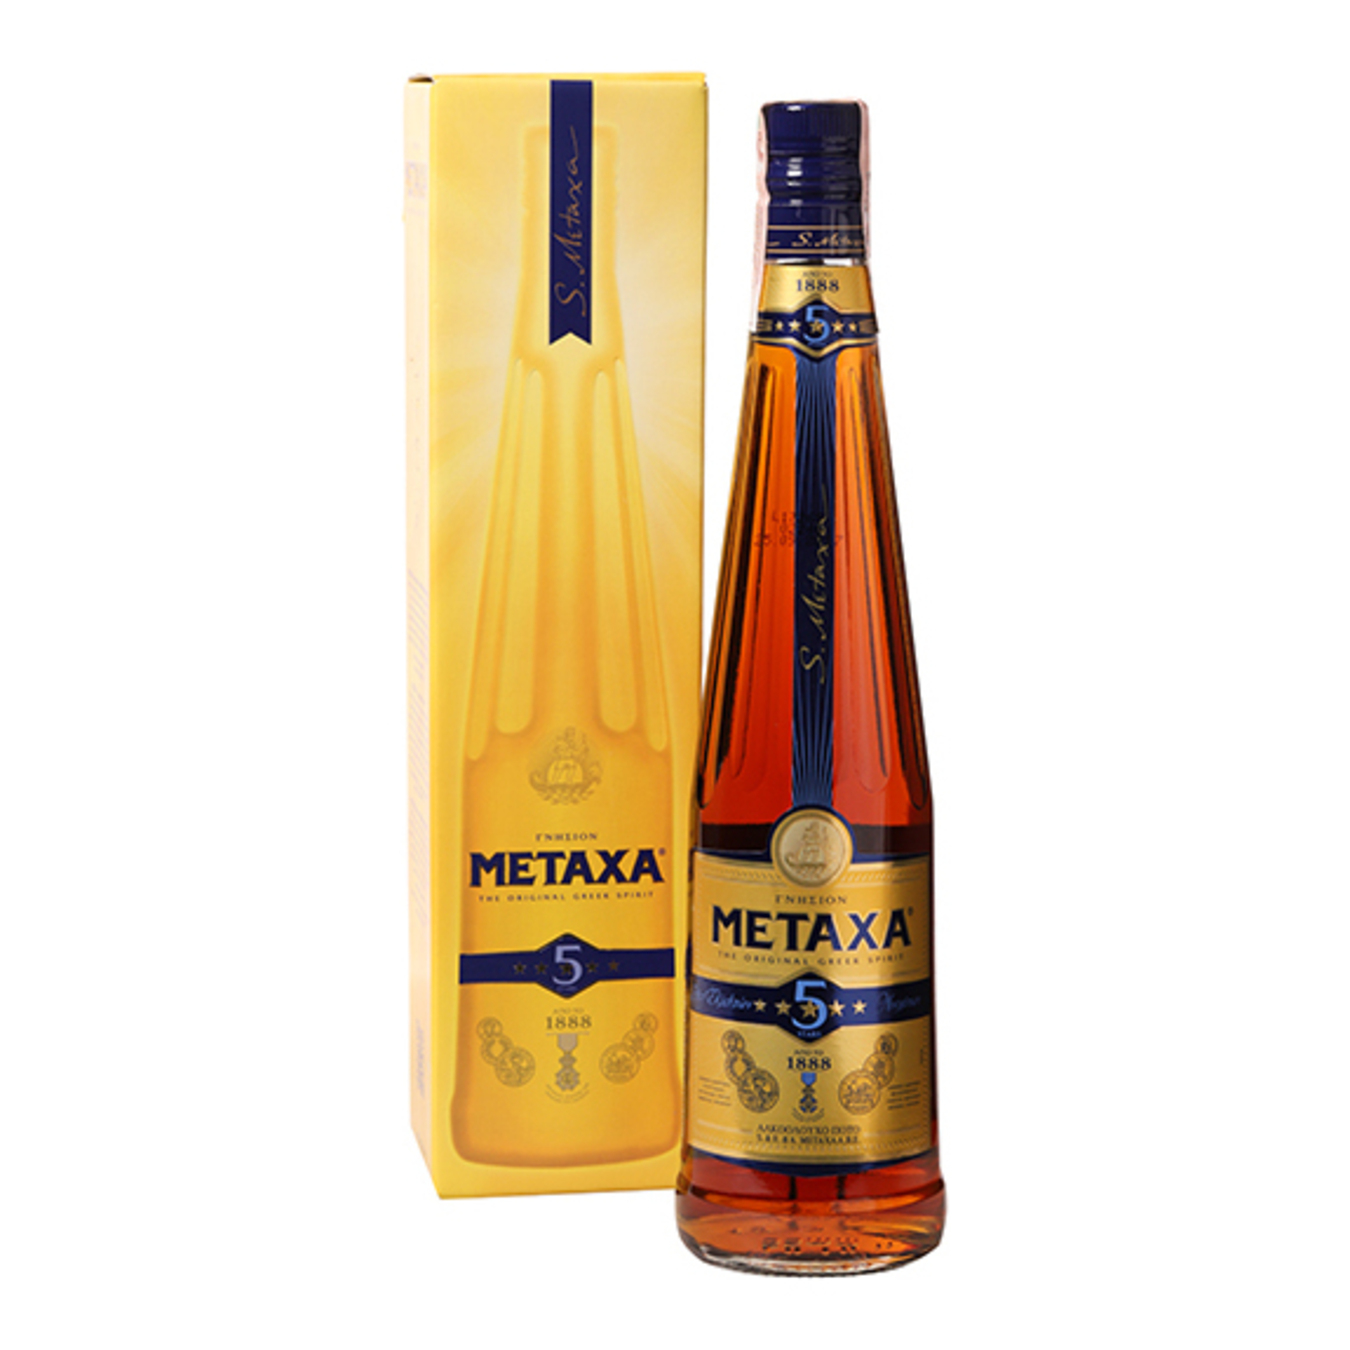 Metaxa 5* Brandy 38% 0,7l